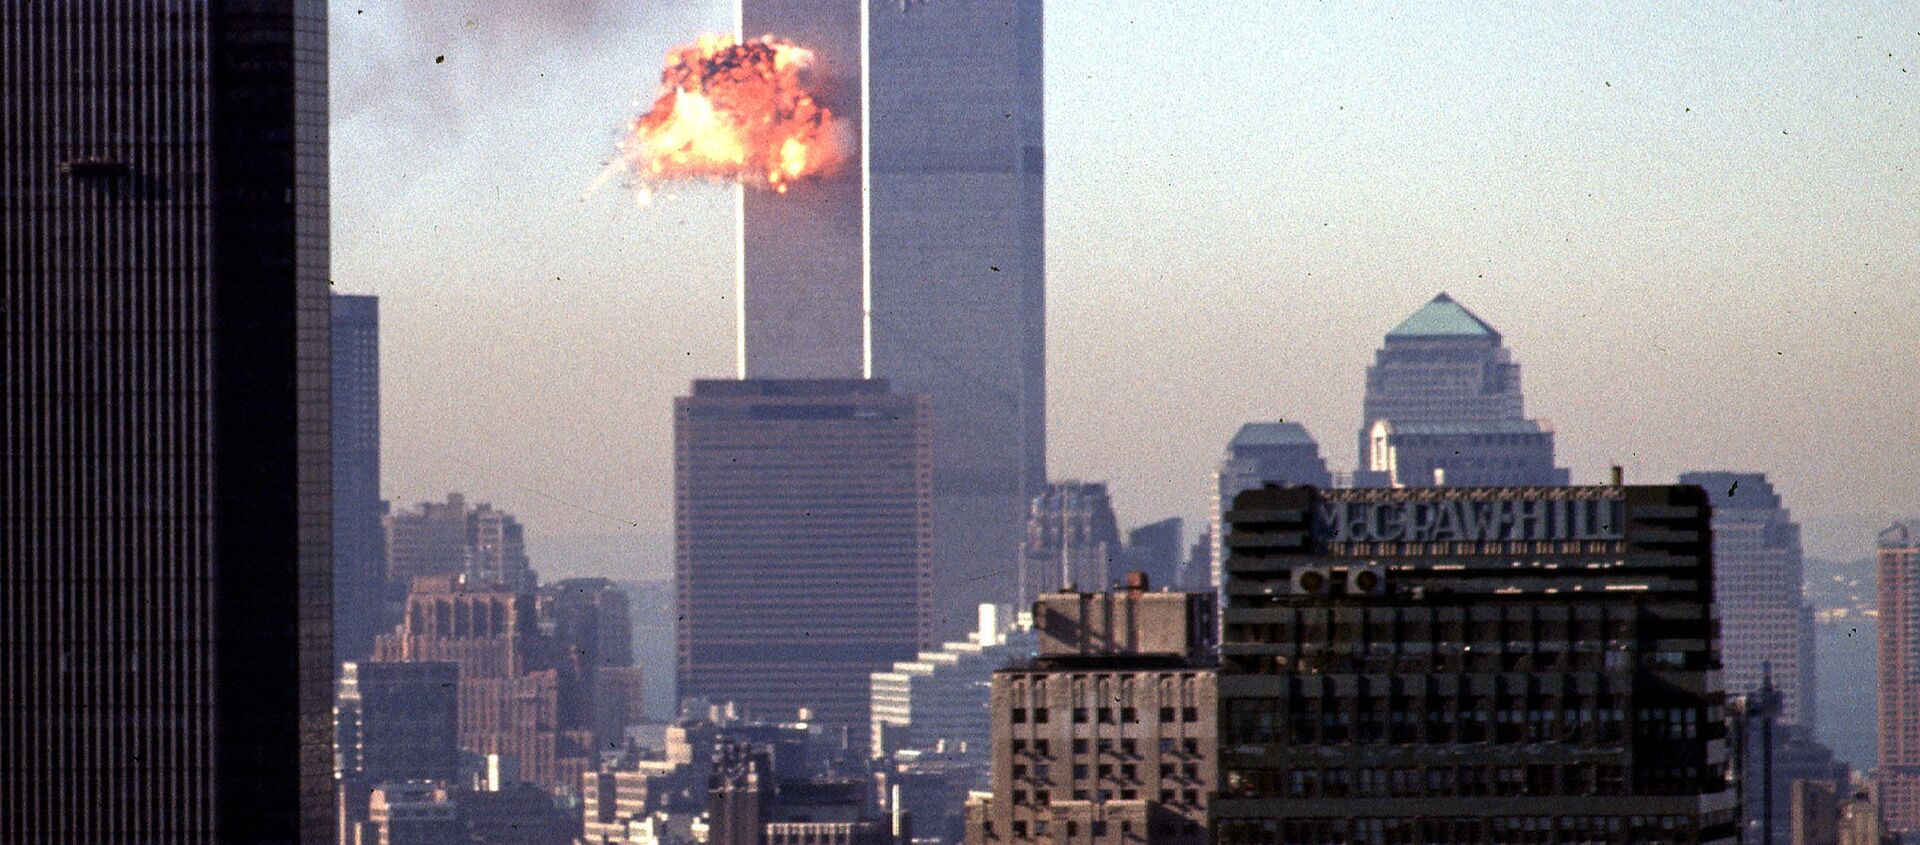 Un avión choca contra las Torres Gemelas de Nueva York el 11 de septiembre de 2001 - Sputnik Mundo, 1920, 11.09.2019